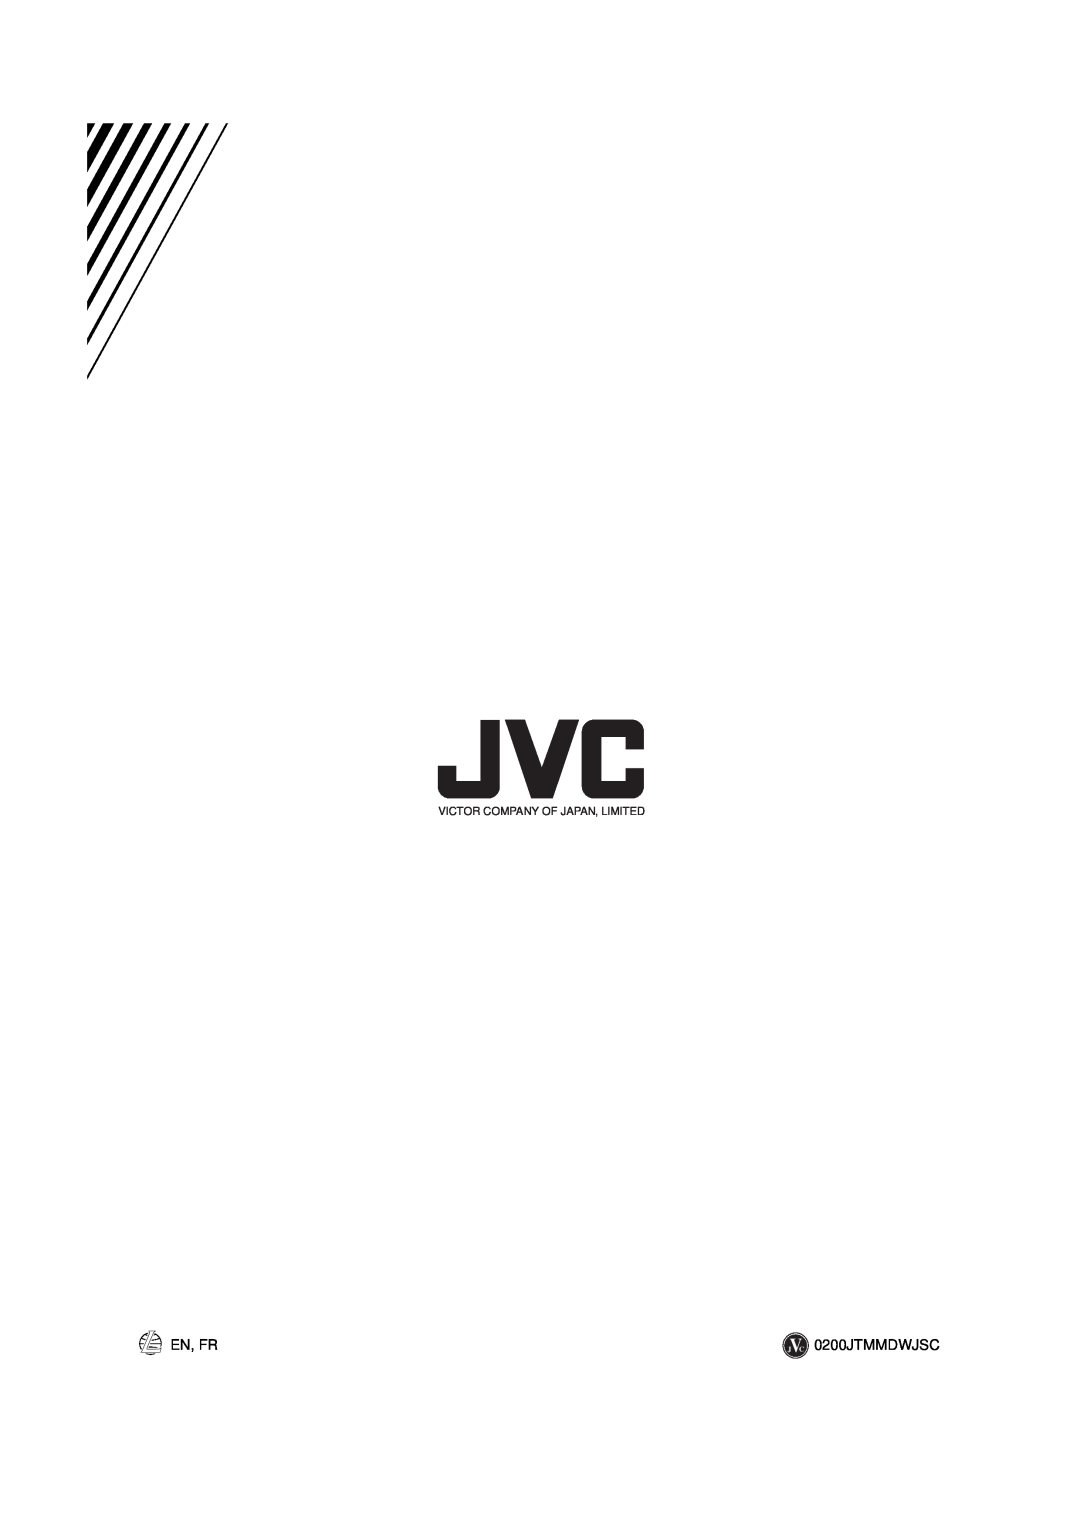 JVC LVT0378-001A, 0200JTMMDWJSCEN manual En, Fr, Victor Company Of Japan, Limited 